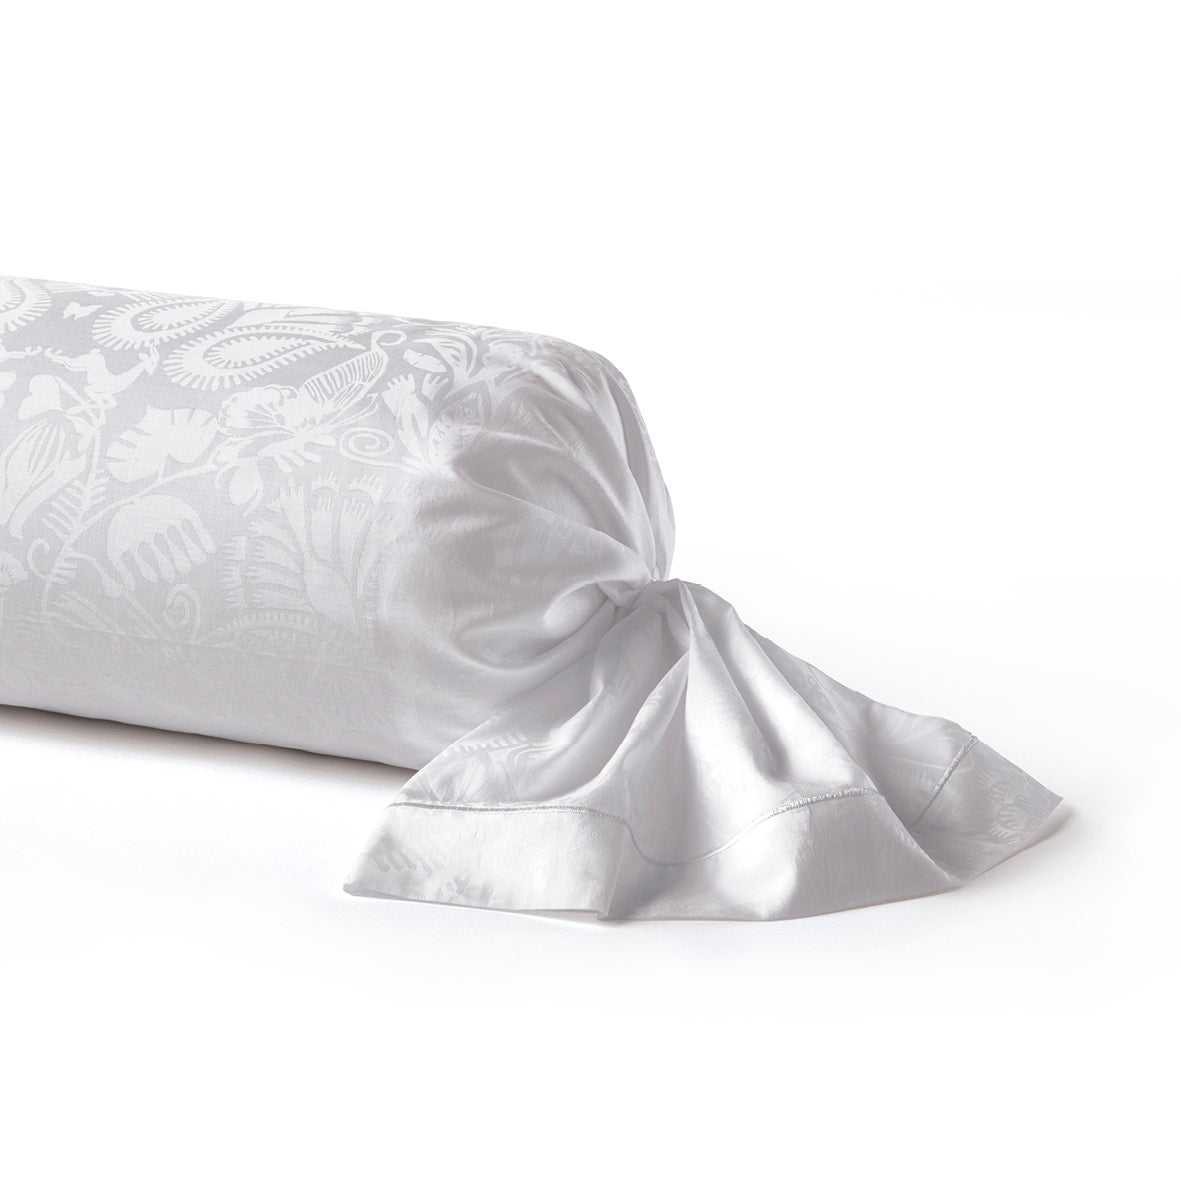 Pillowcase(s) cotton satin - Love Stories White - Jacquard woven